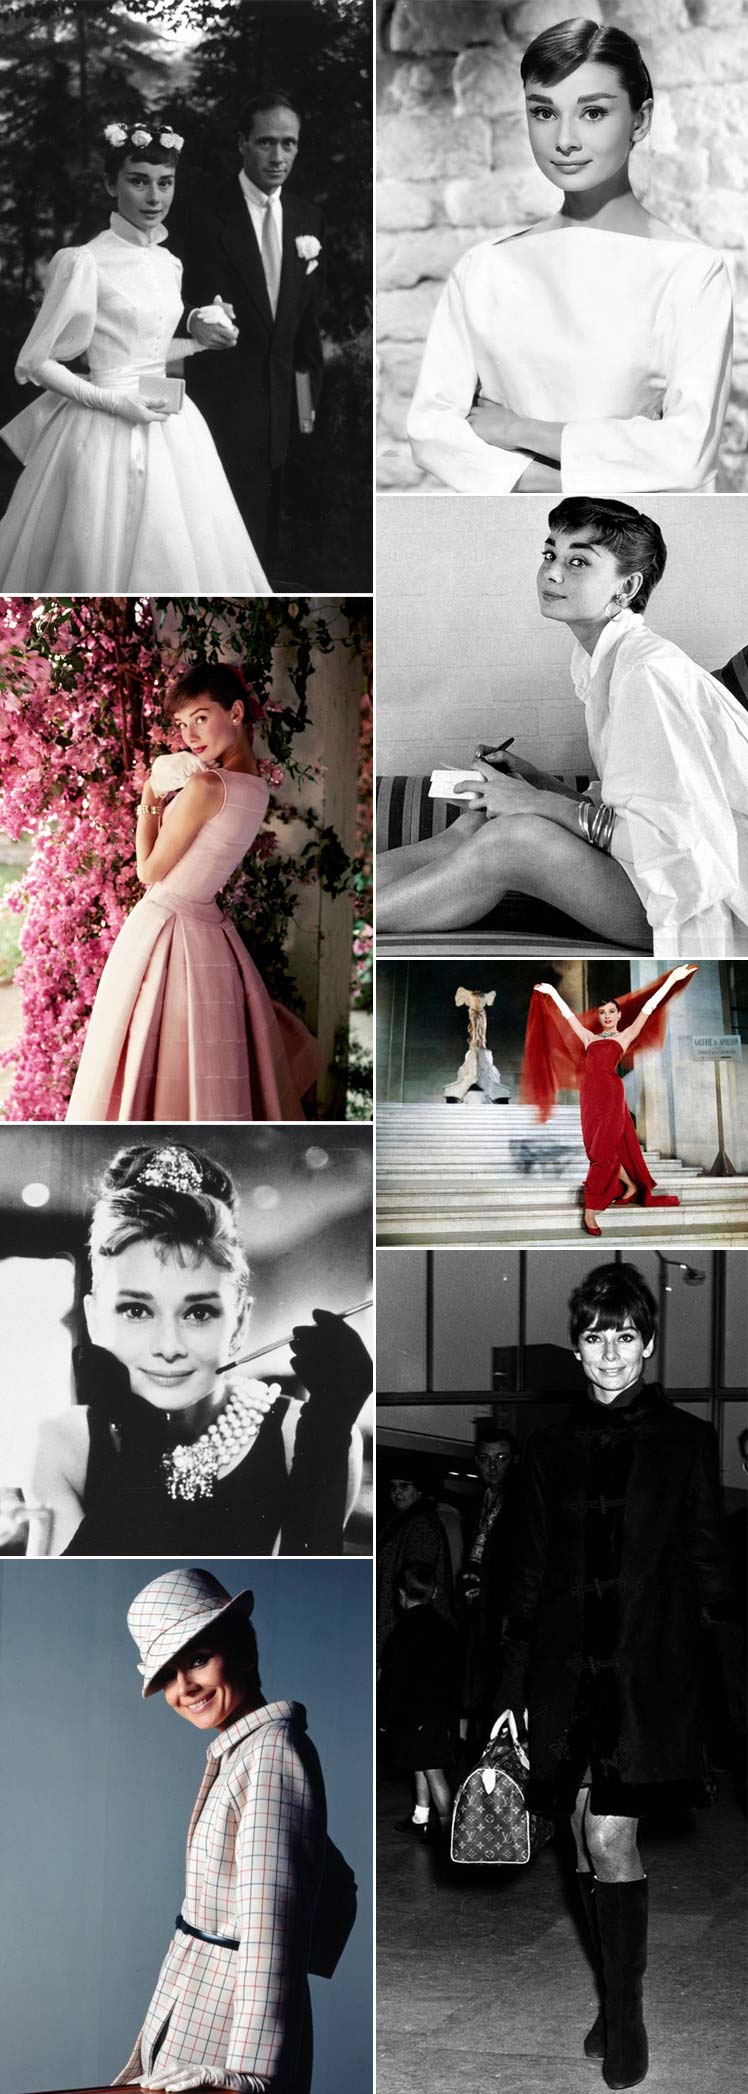 Celebrating Audrey Hepburn's style